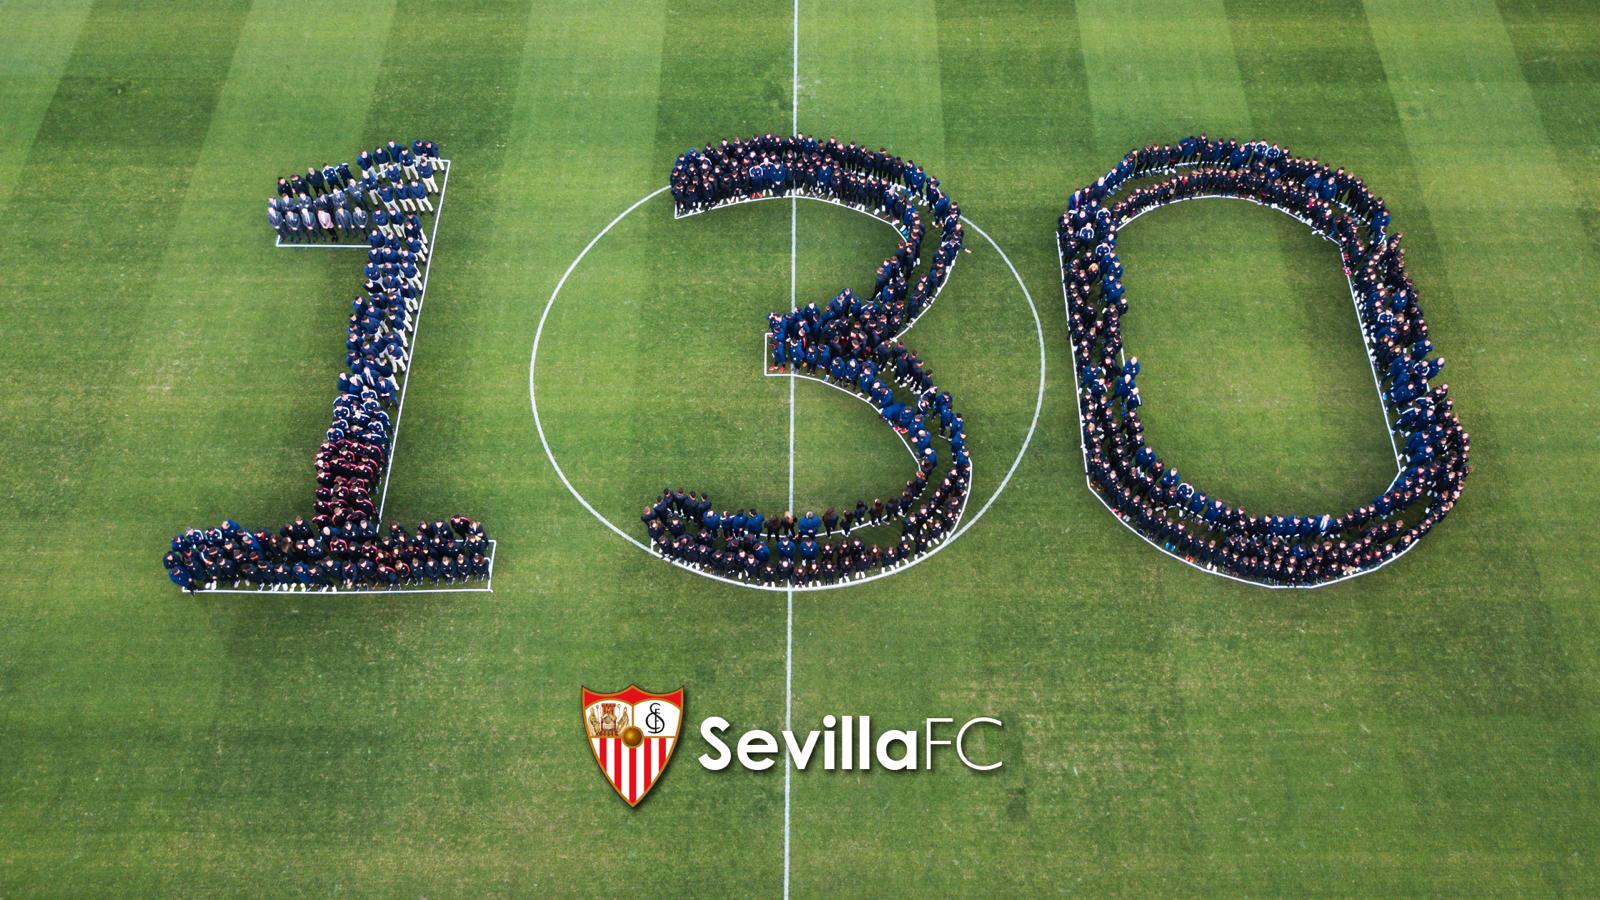 Las plantillas del Sevilla FC forman el 130 sobre el césped